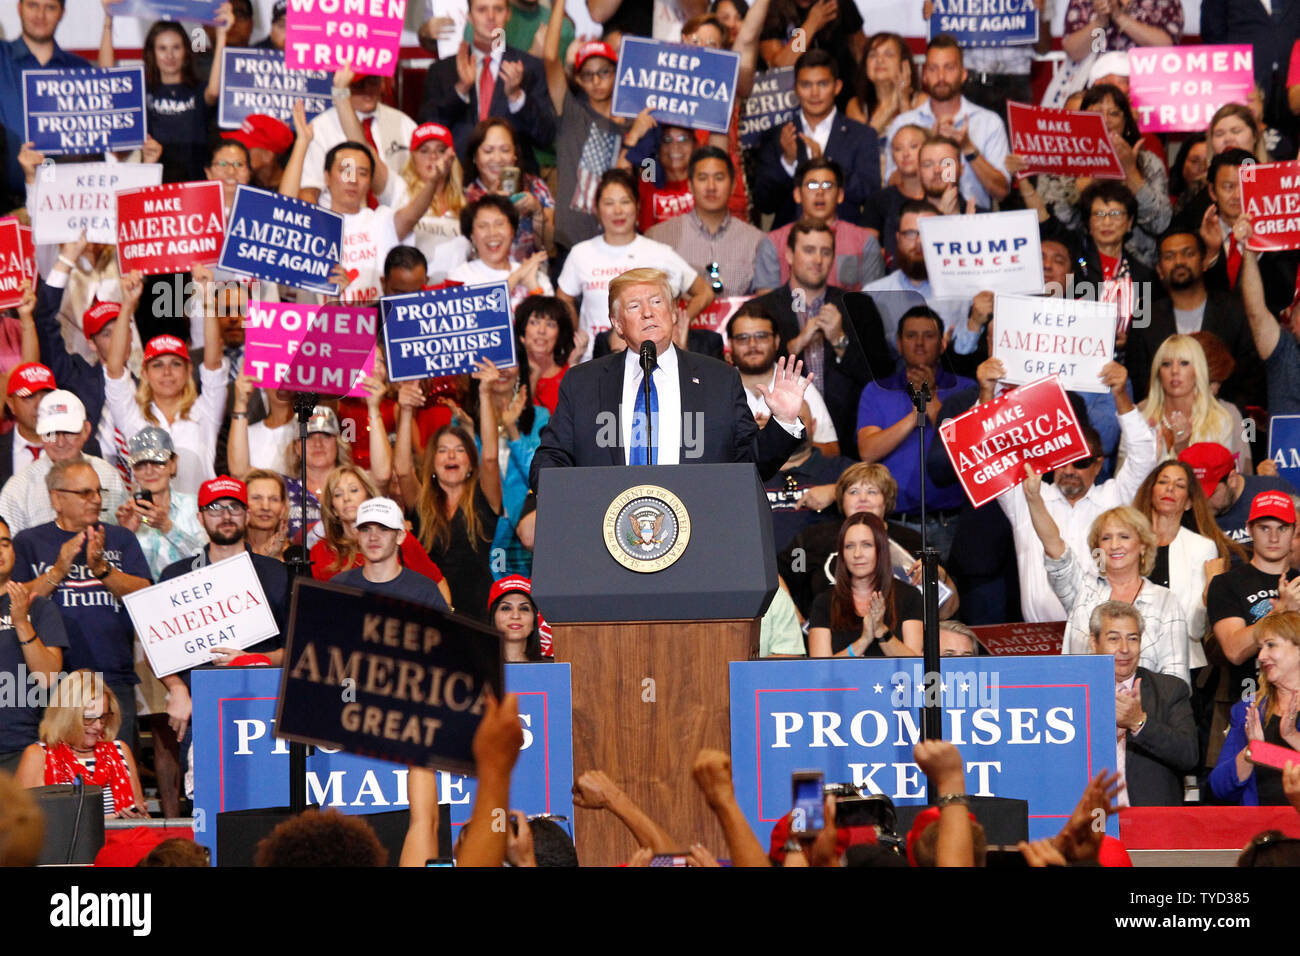 Le président Donald Trump aborde une foule de partisans lors d'un rassemblement à la Las Vegas Convention Center à Las Vegas, Nevada le 20 septembre, 2018. Photo de James Atoa/UPI Banque D'Images